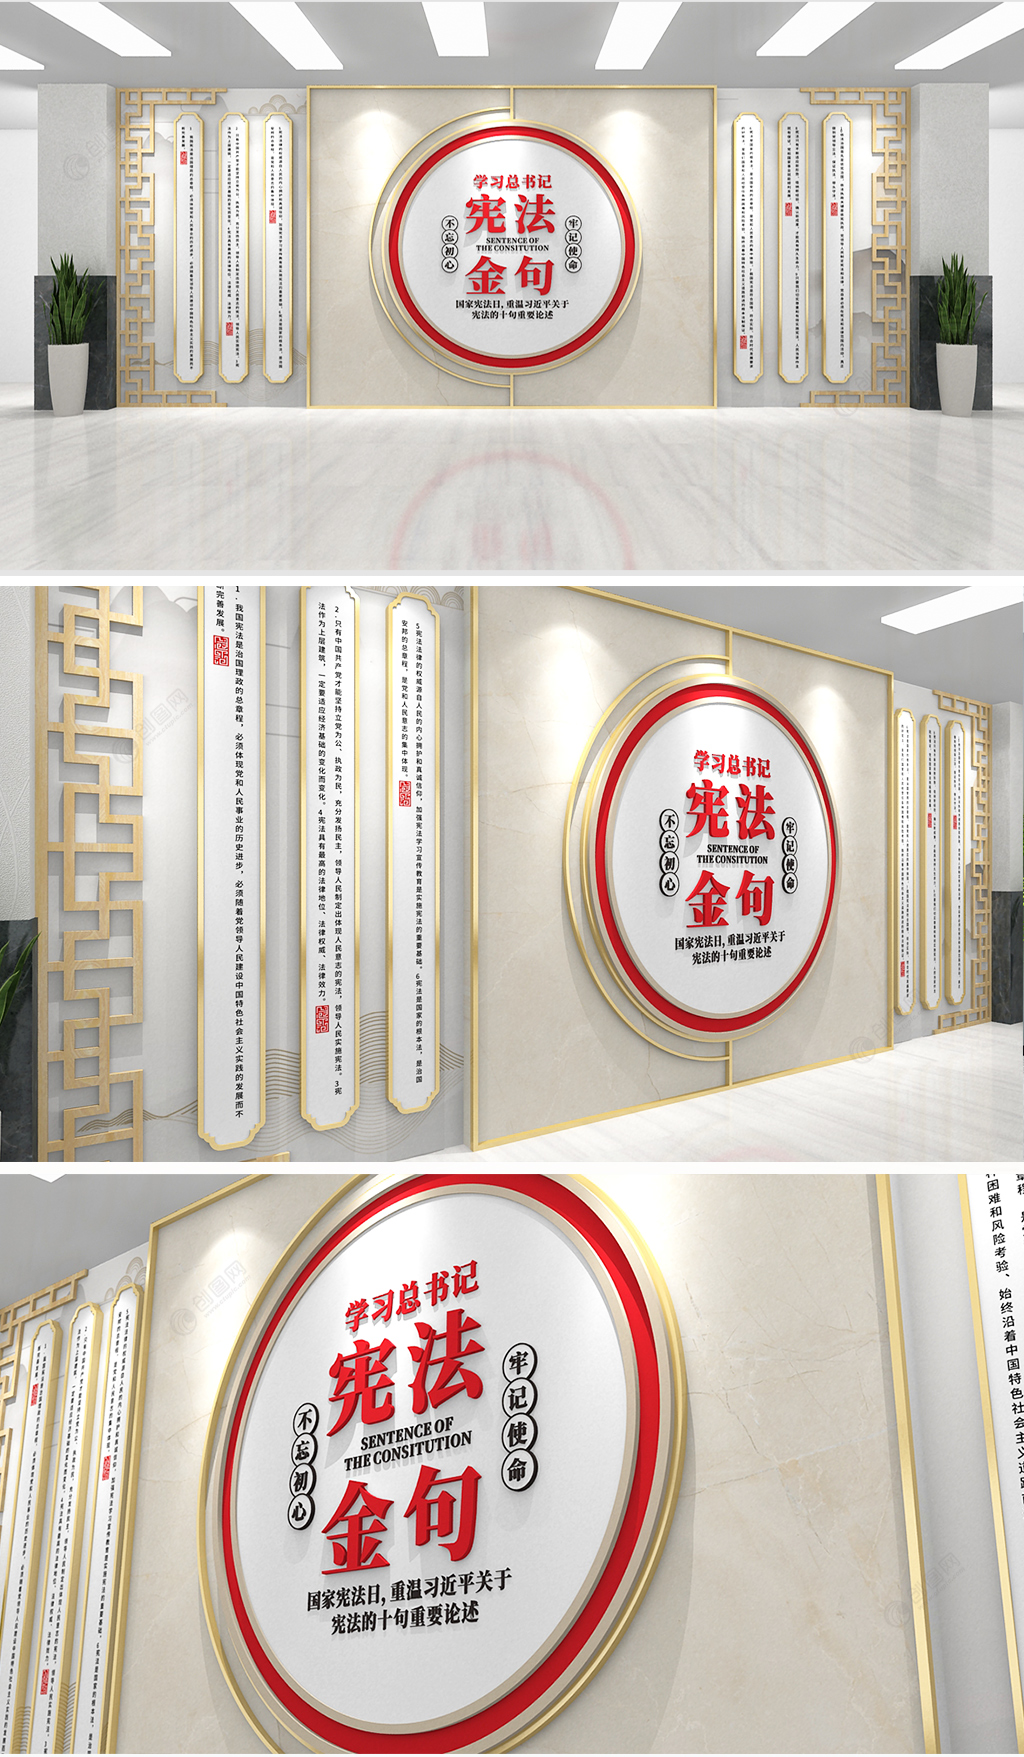 中式简约大气学习总书记宪法金句党建文化墙设计